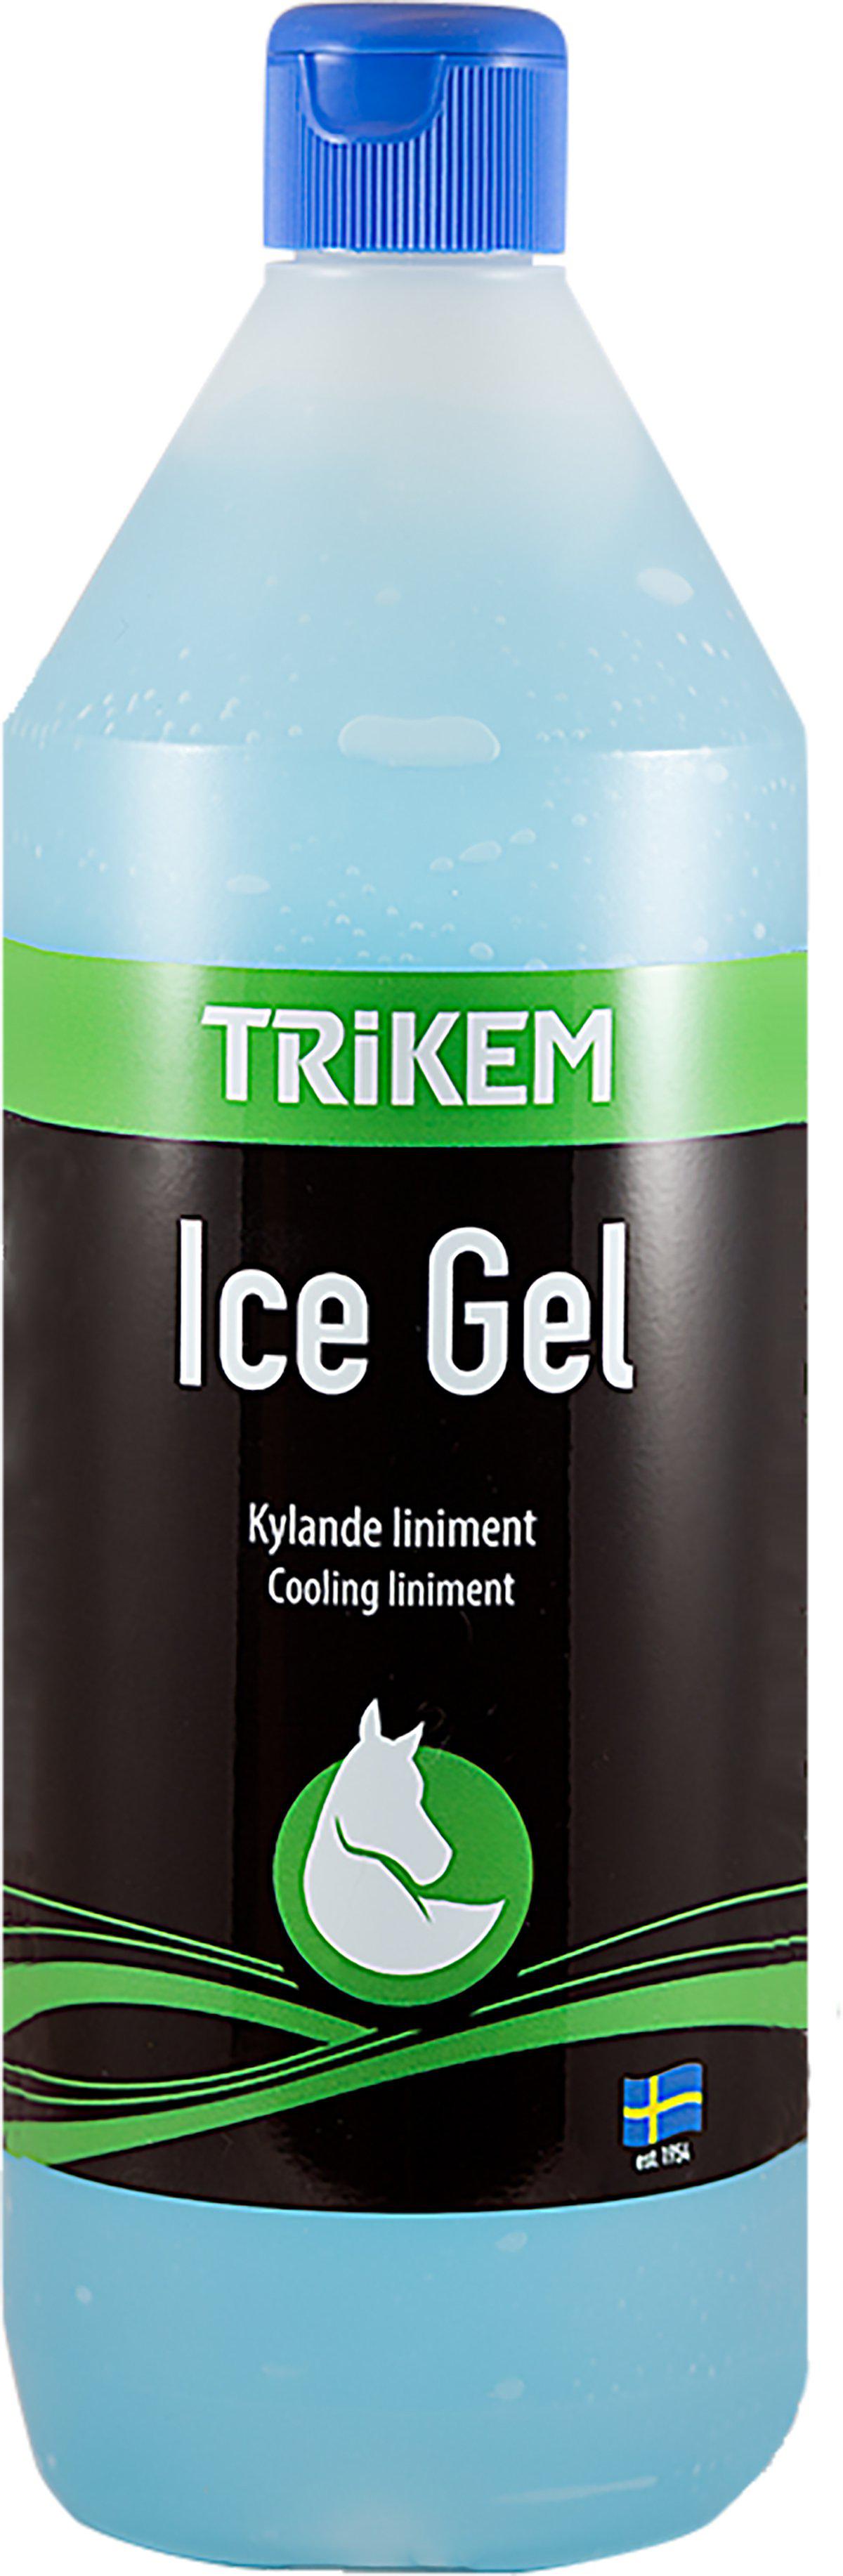 TRIKEM - Ice Gel Ps 1L - (822.7032)